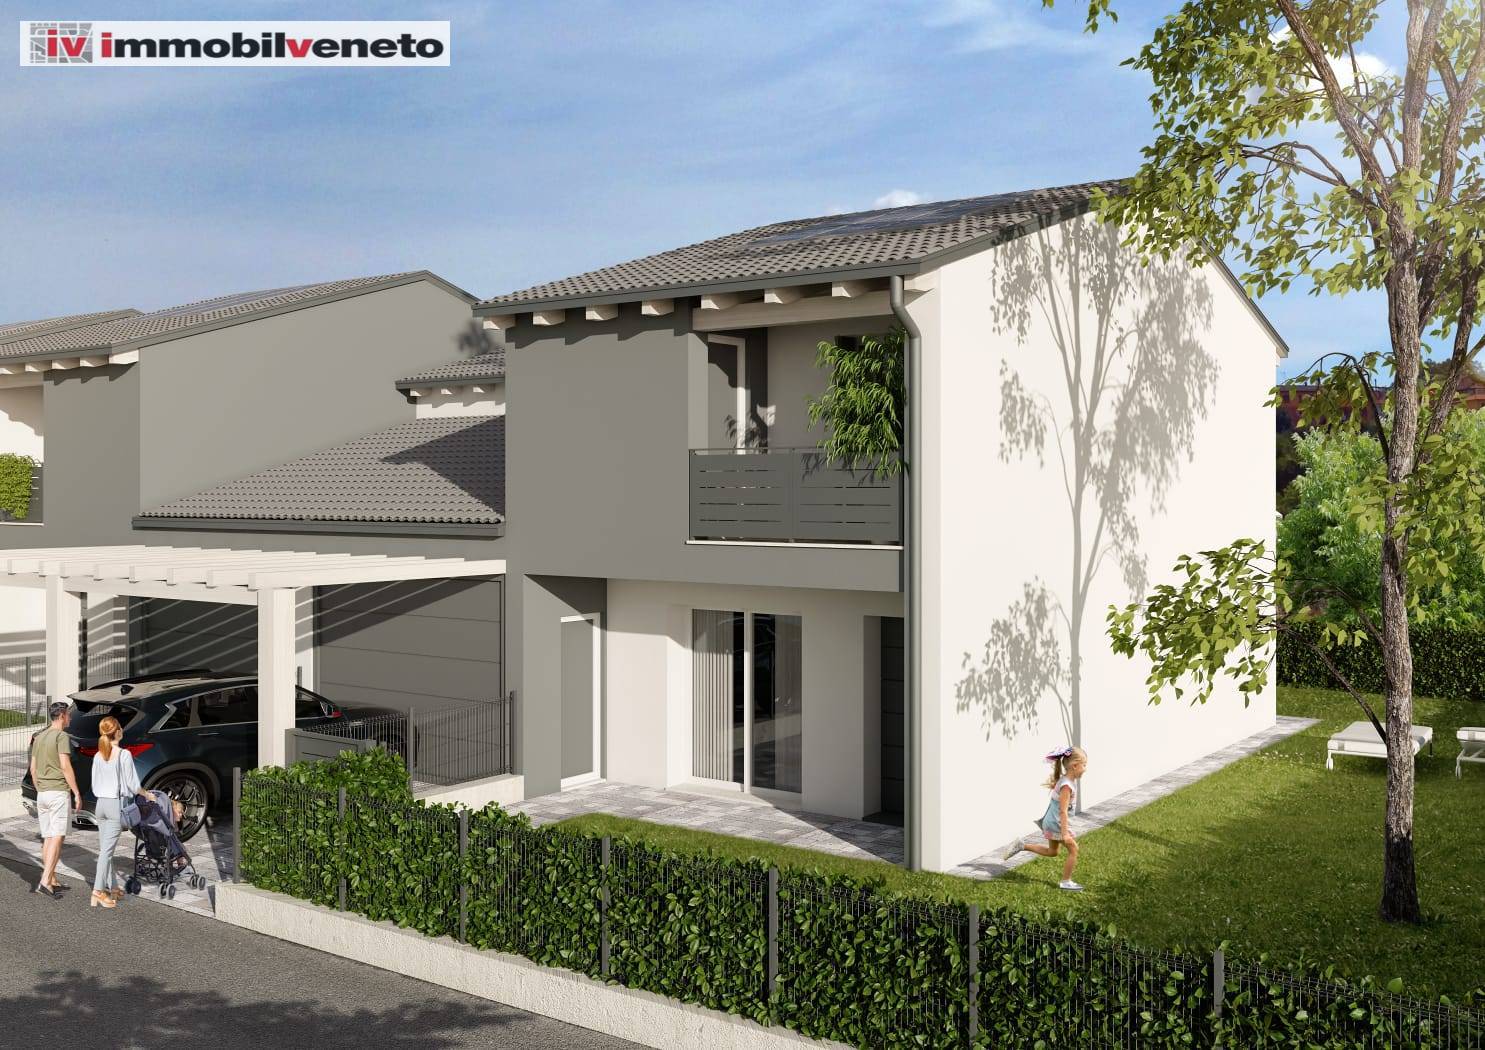 Villa a Schiera in vendita a Sarego, 8 locali, zona do, prezzo € 290.000 | PortaleAgenzieImmobiliari.it